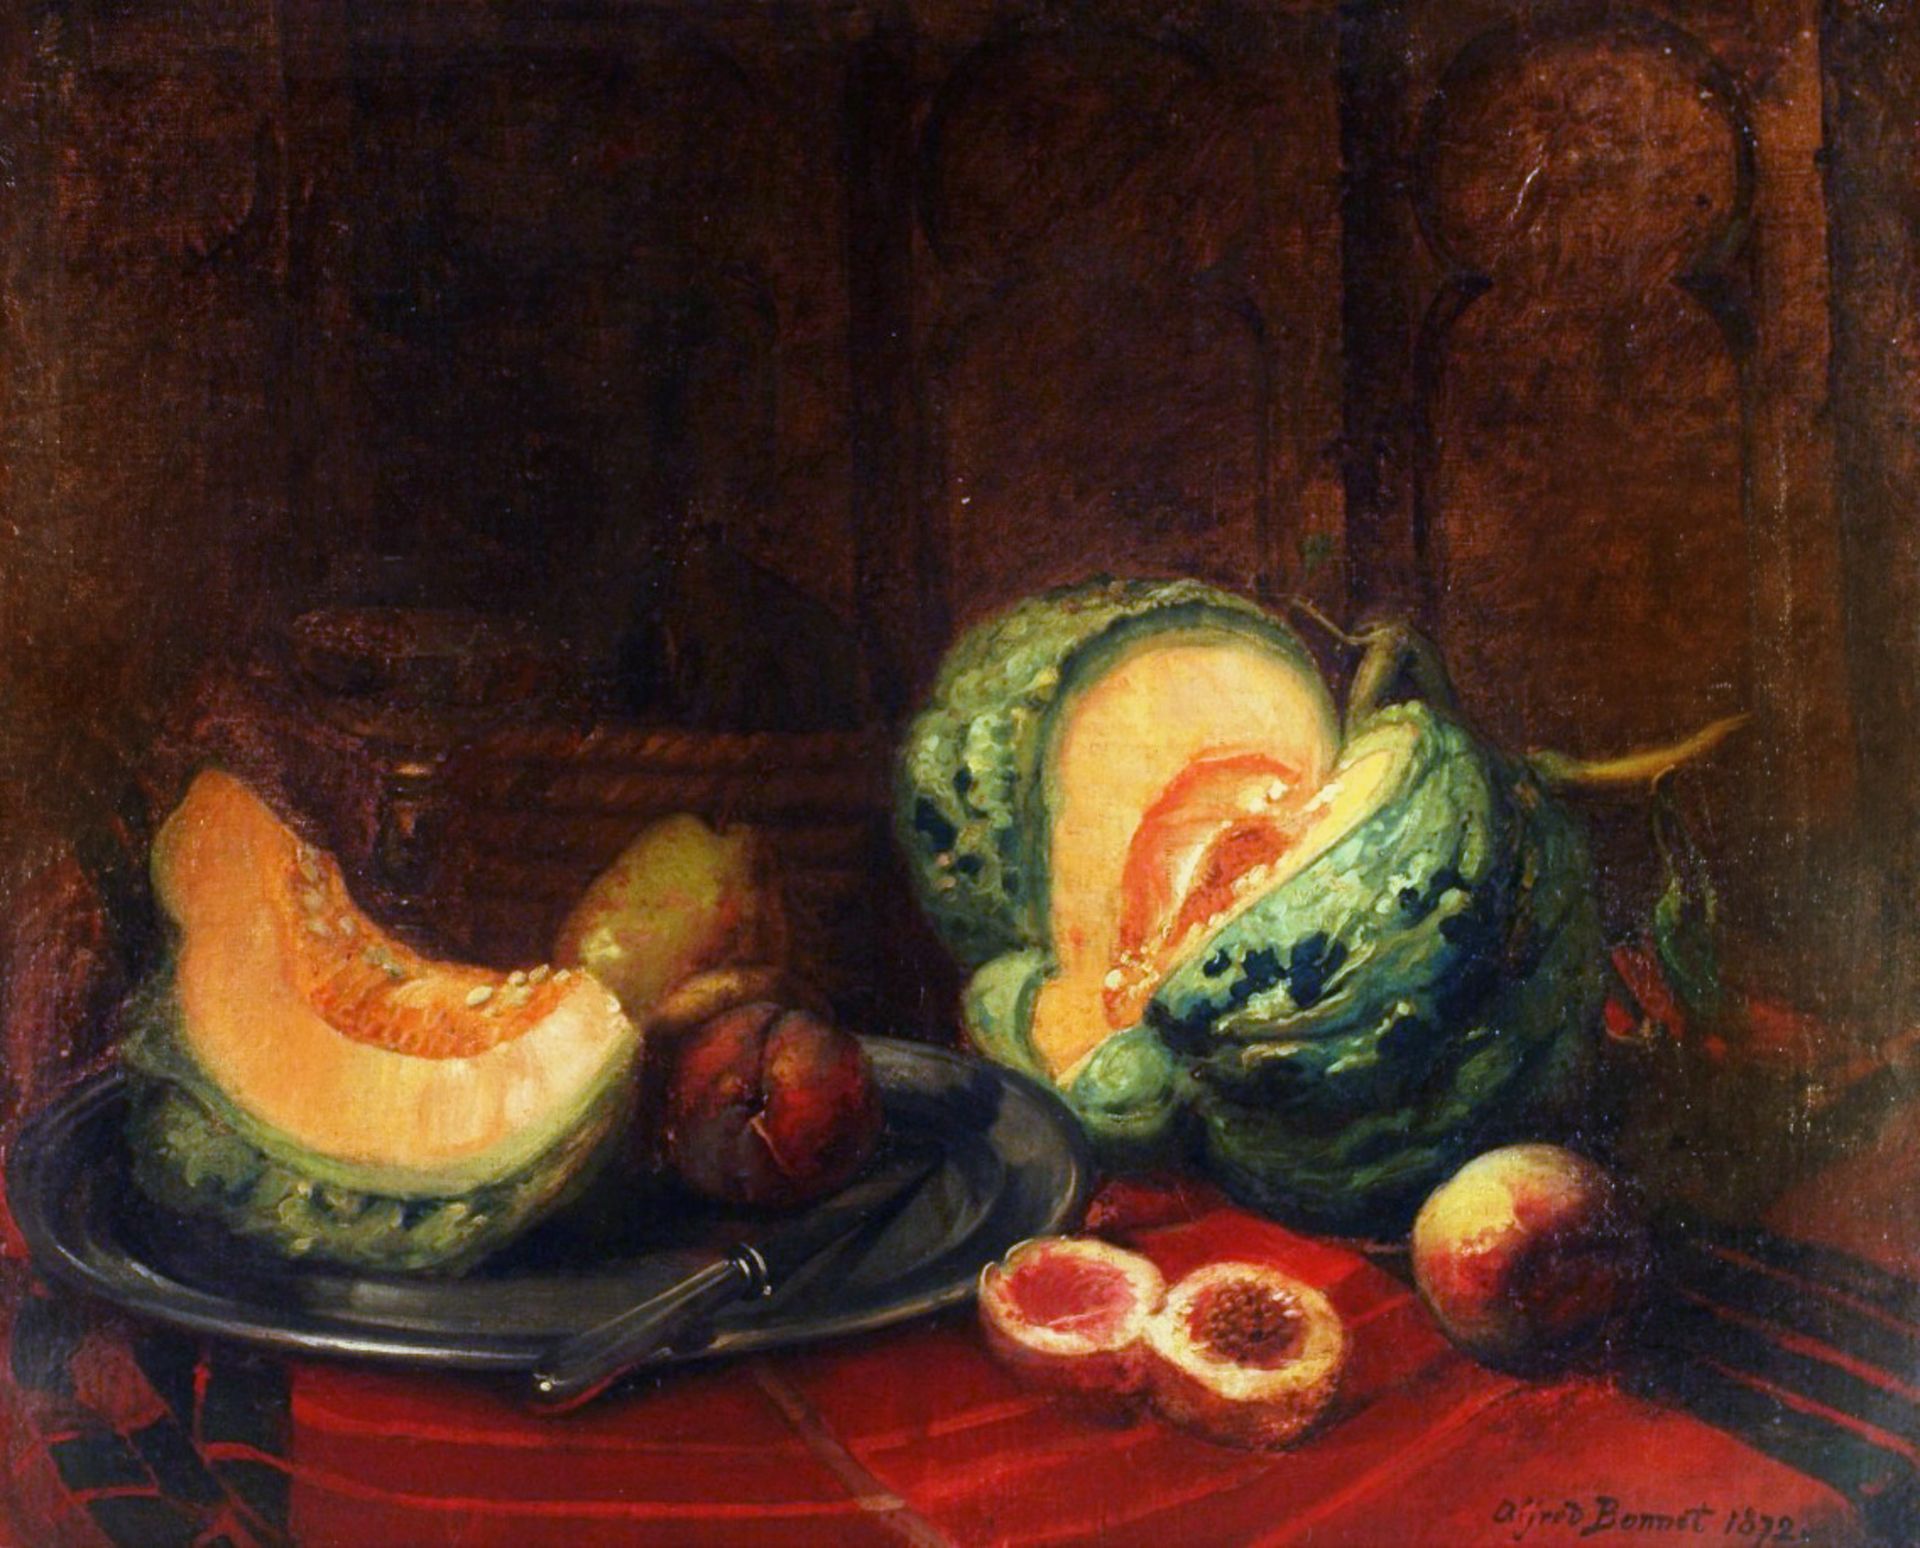 Félix Alfred BONNET (1847-1925) - Nature morte aux fruits, 1872 - Huile sur toile, [...]